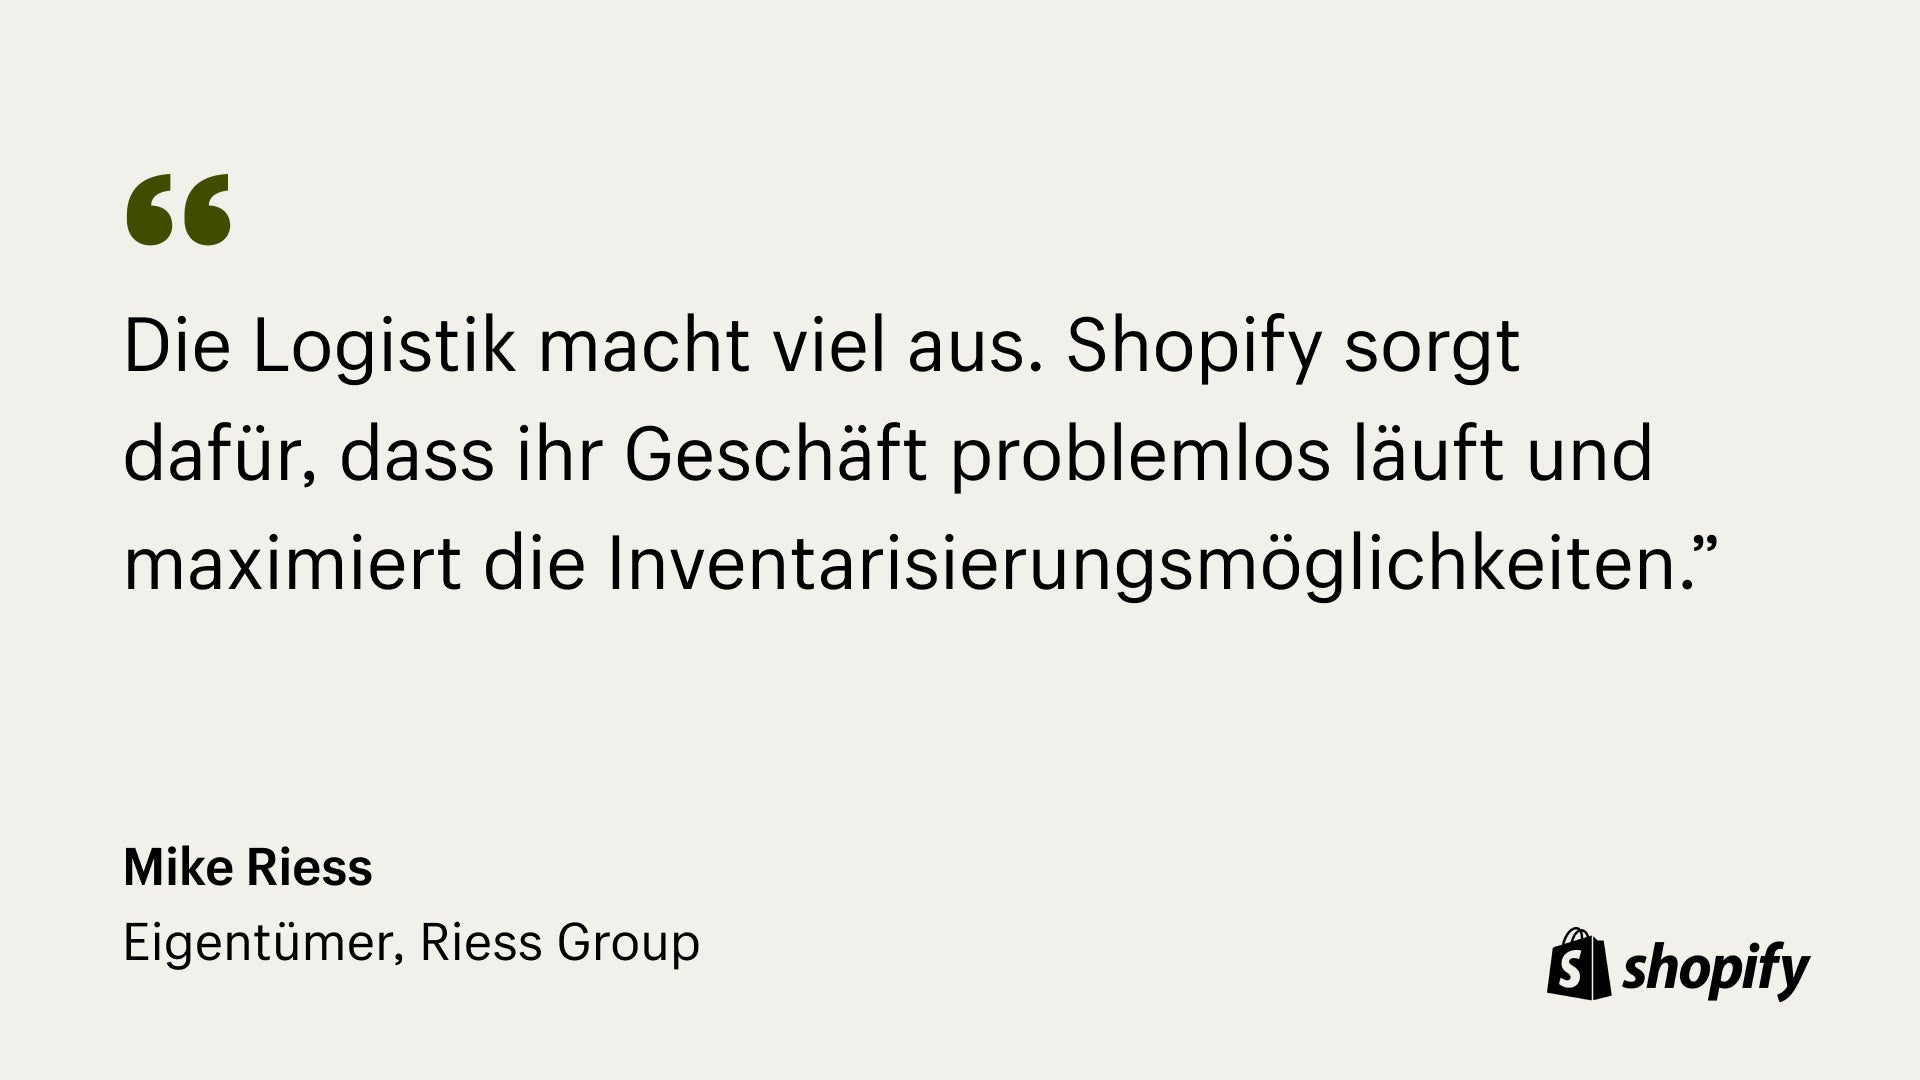 Bild eines Zitats von Mark Riess, Inhaber von Riess, in dem es heißt: „Es ist eine Menge Logistik. Den Geschäftsablauf wirklich zu vereinfachen, die Lagerfähigkeit zu maximieren und sich über Best Practices für die Angebote von Shopify zu beraten.“